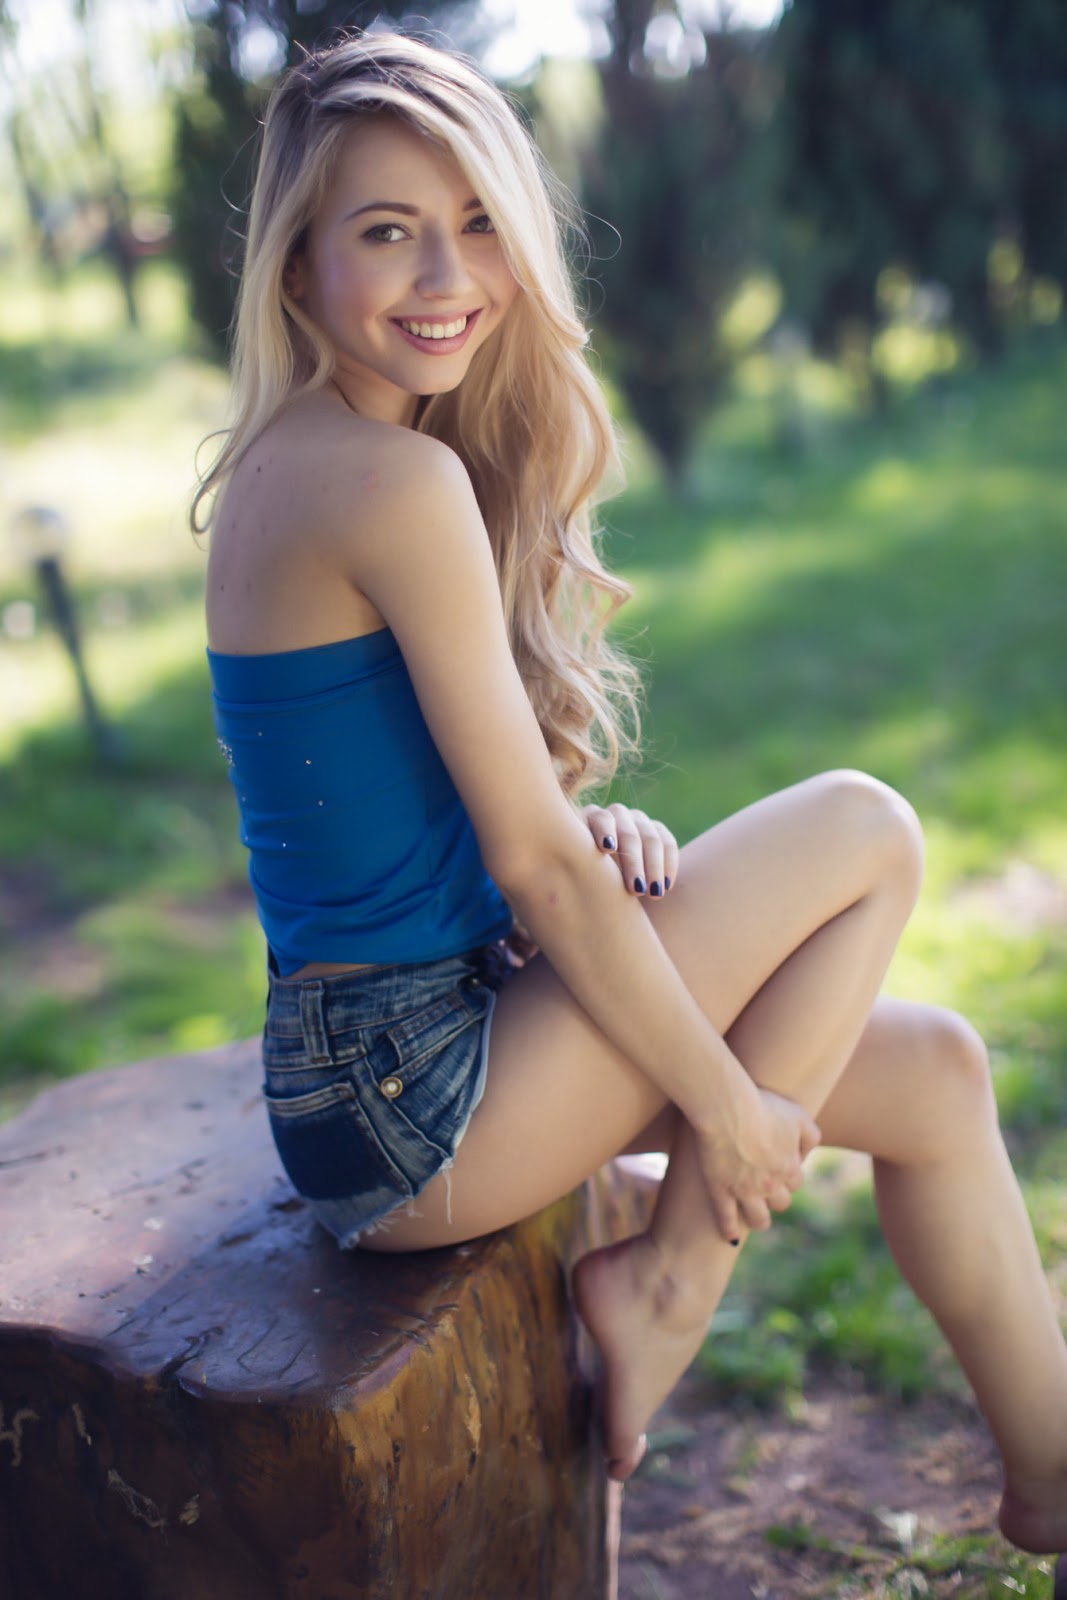 Meet Masha Sholohova Such a beautiful woman Ukrainian Girls Russian Women.